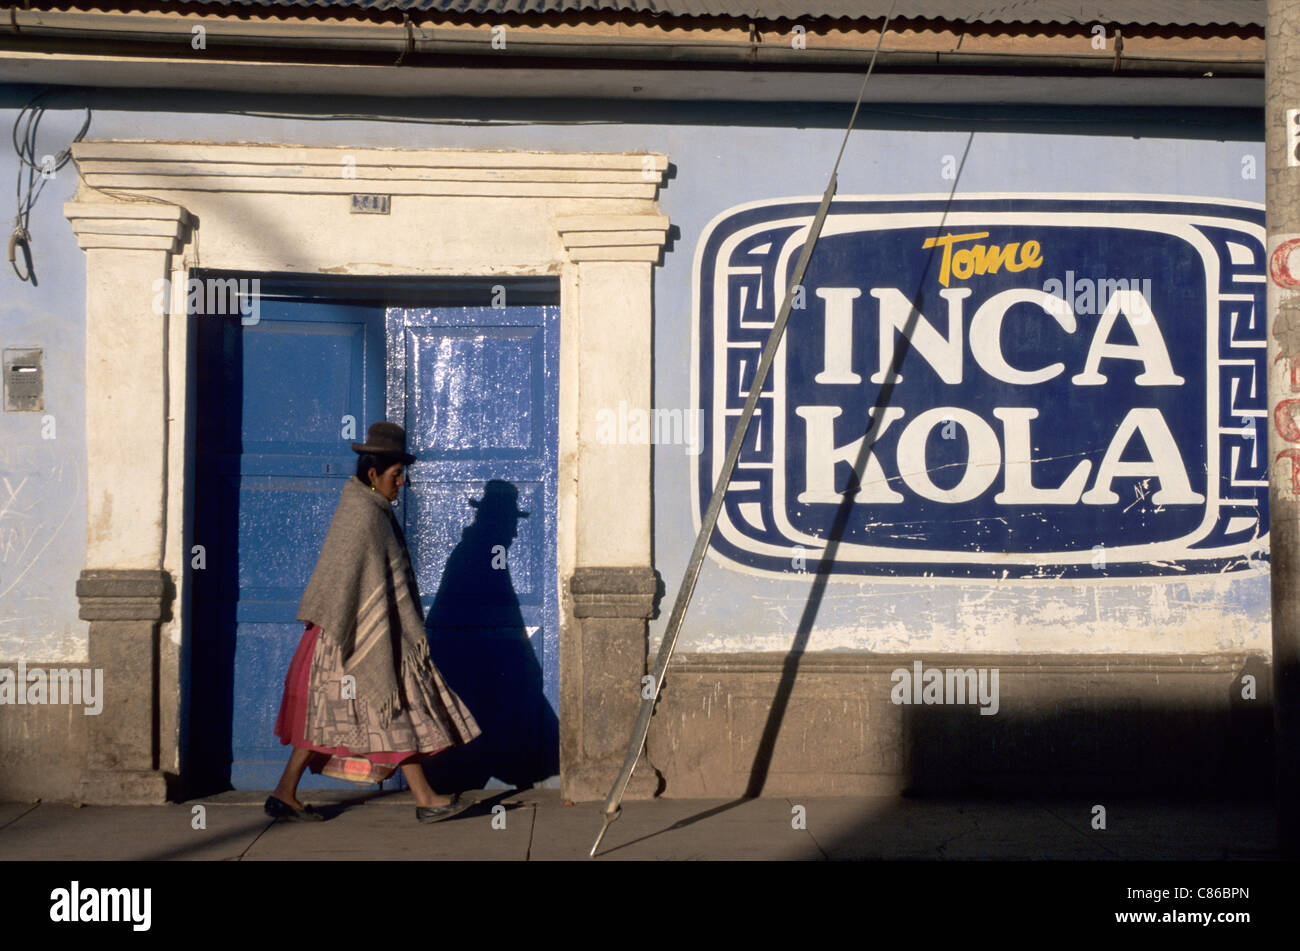 Peru. Frau in traditioneller Kleidung, vorbei an einer blauen Tür mit einem großen Inca Kola-Zeichen. Stockfoto